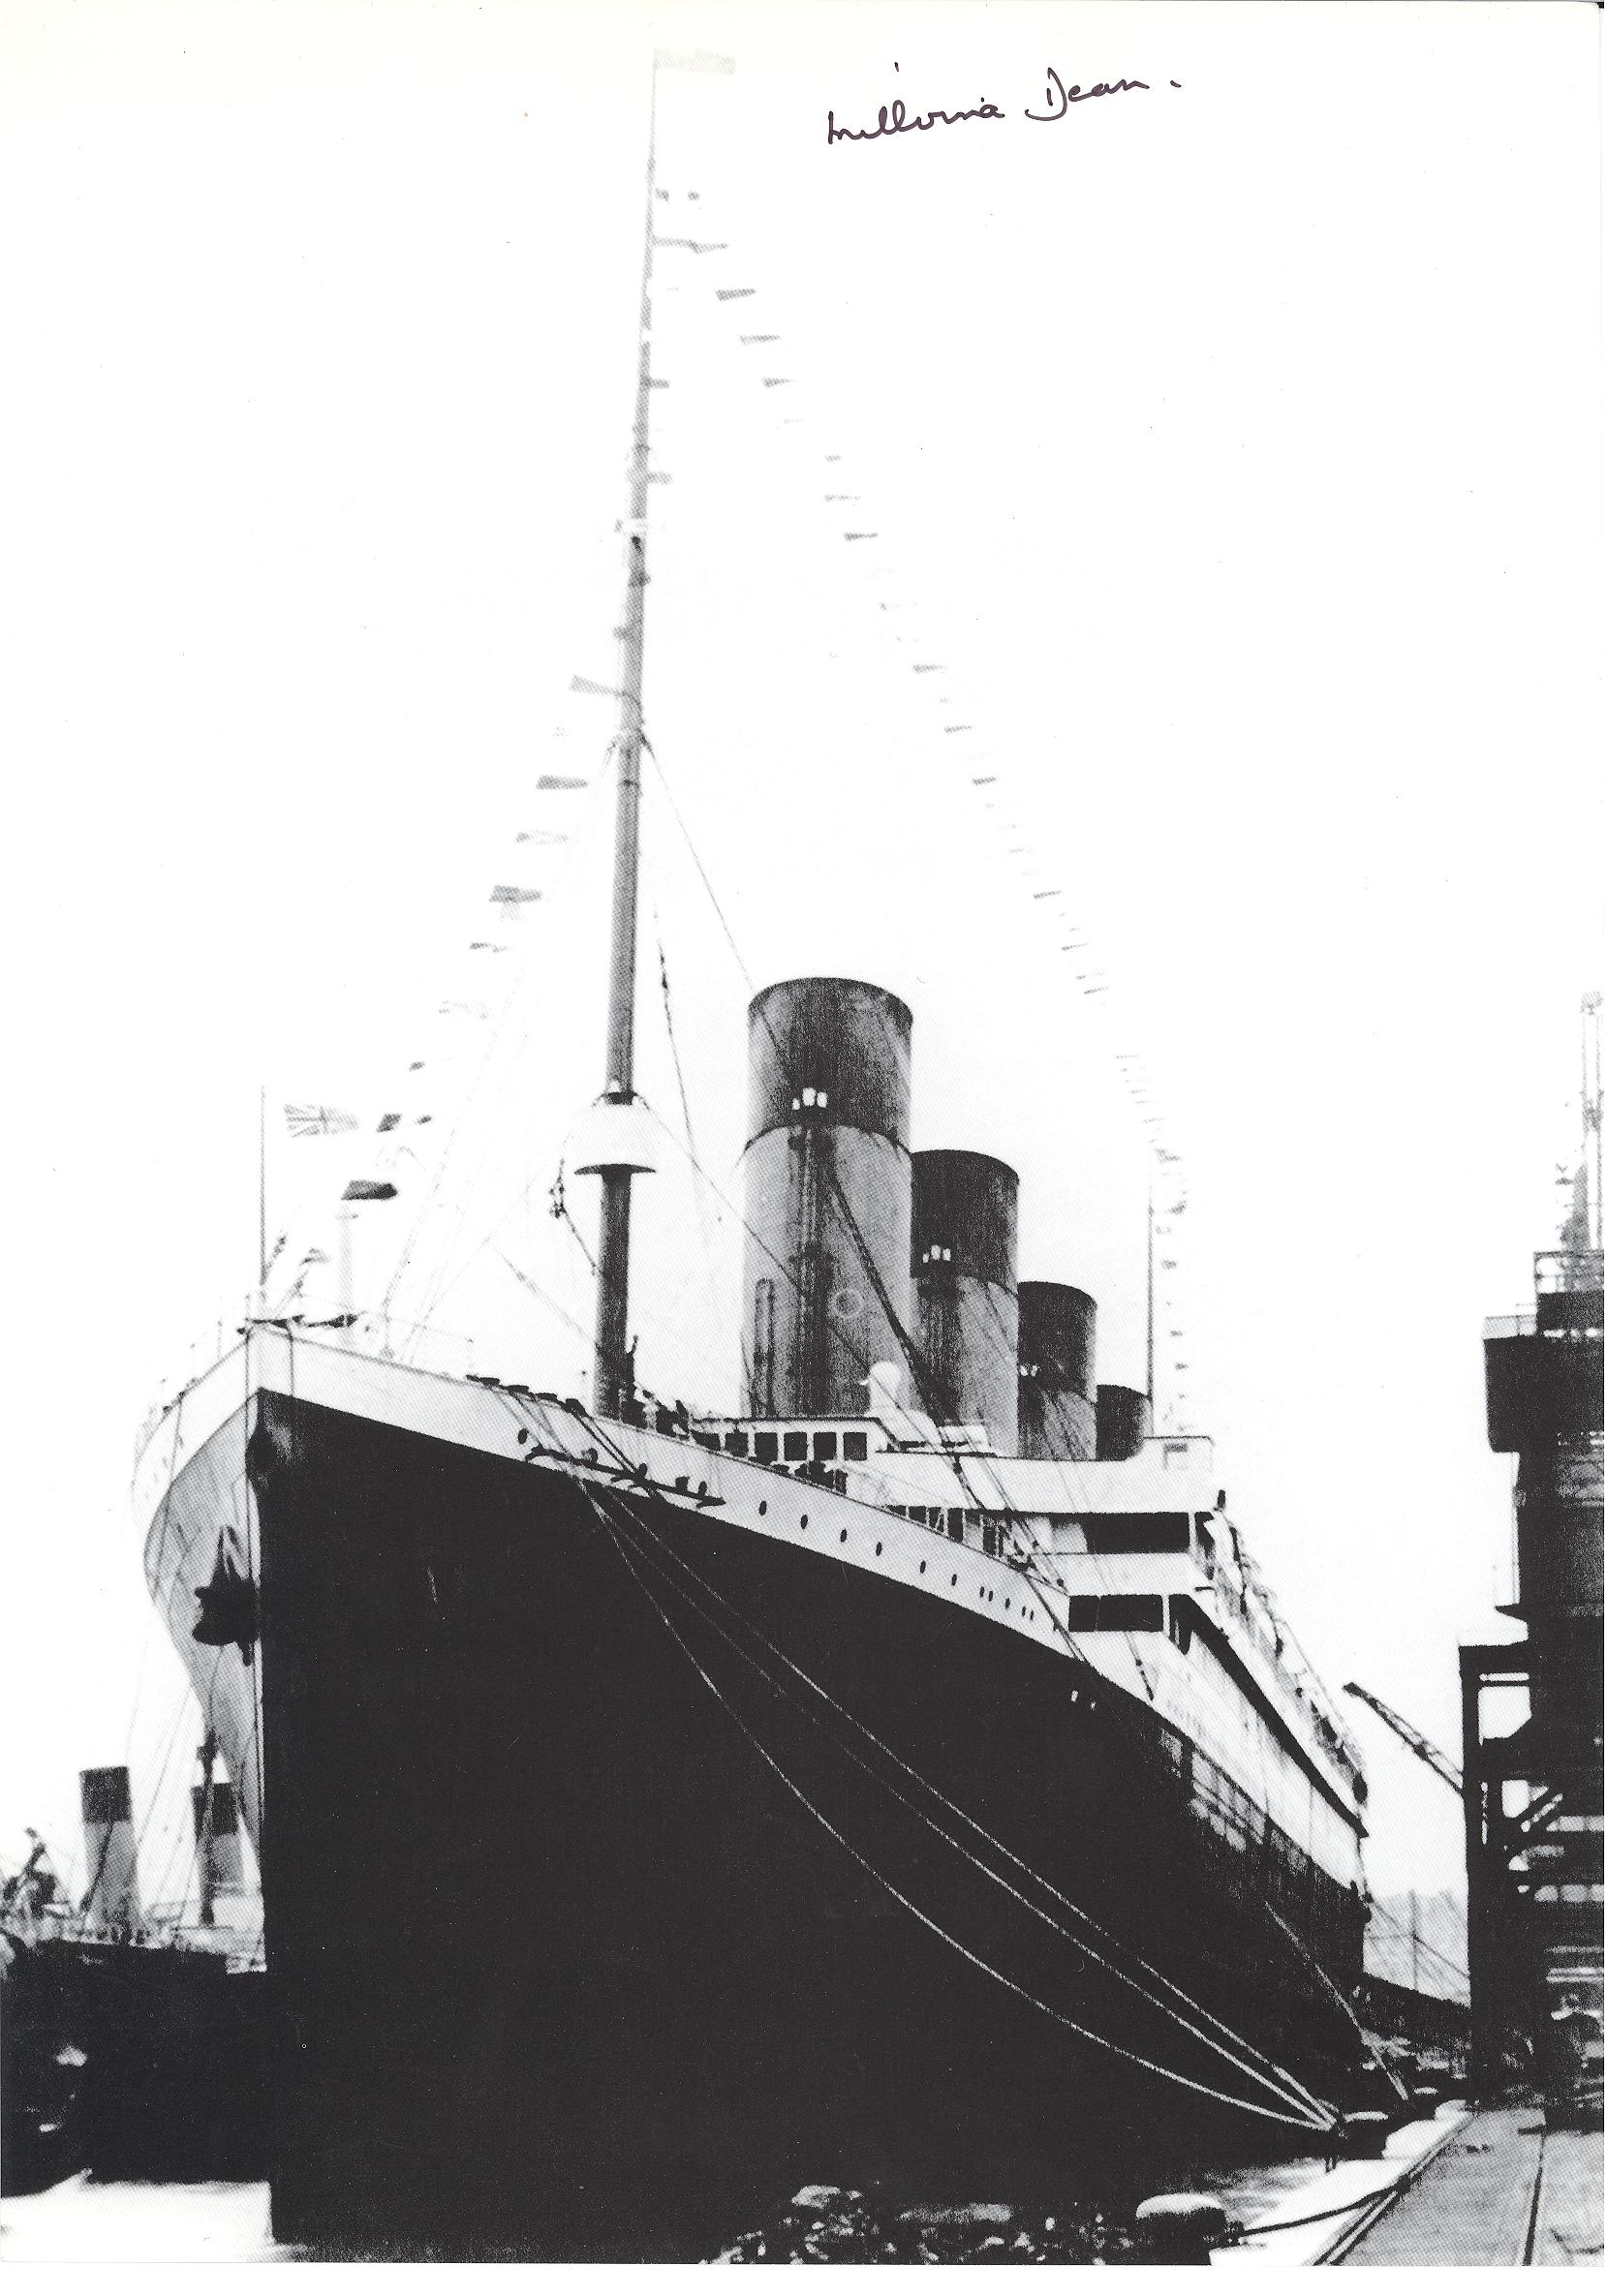 Титаник фото 1912 года фото